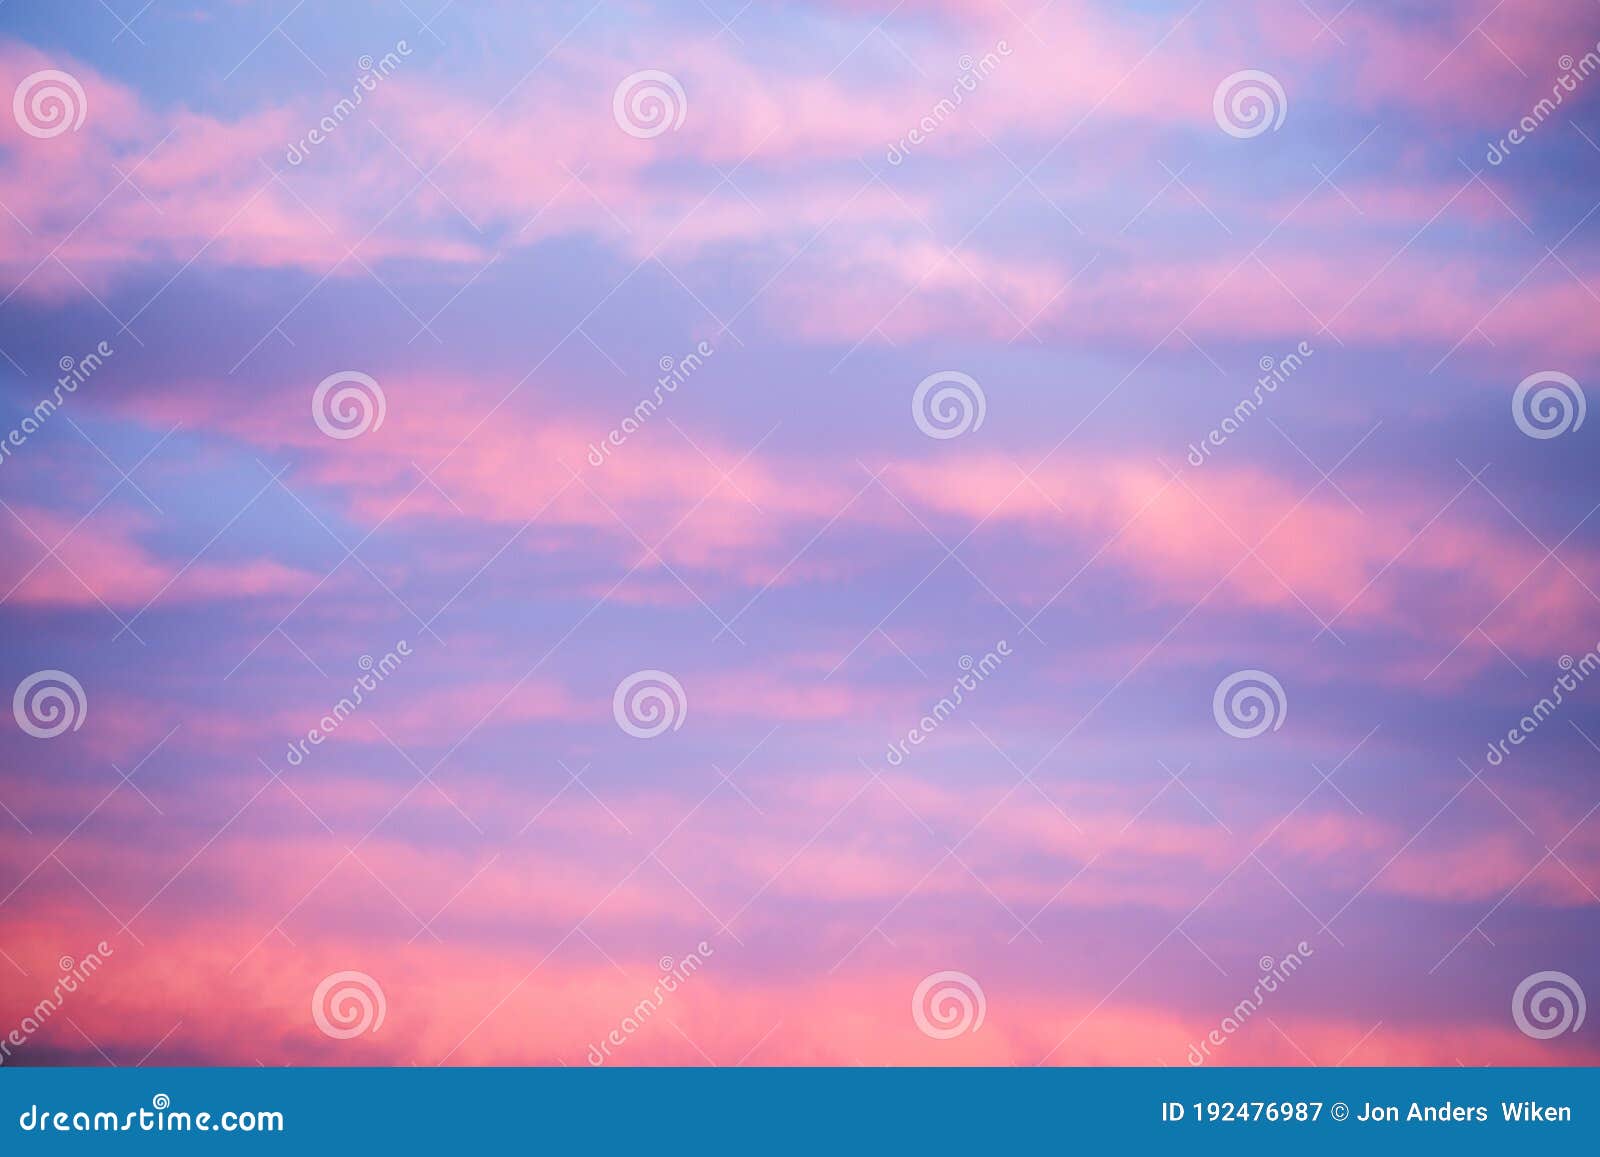 pink skies during sunset